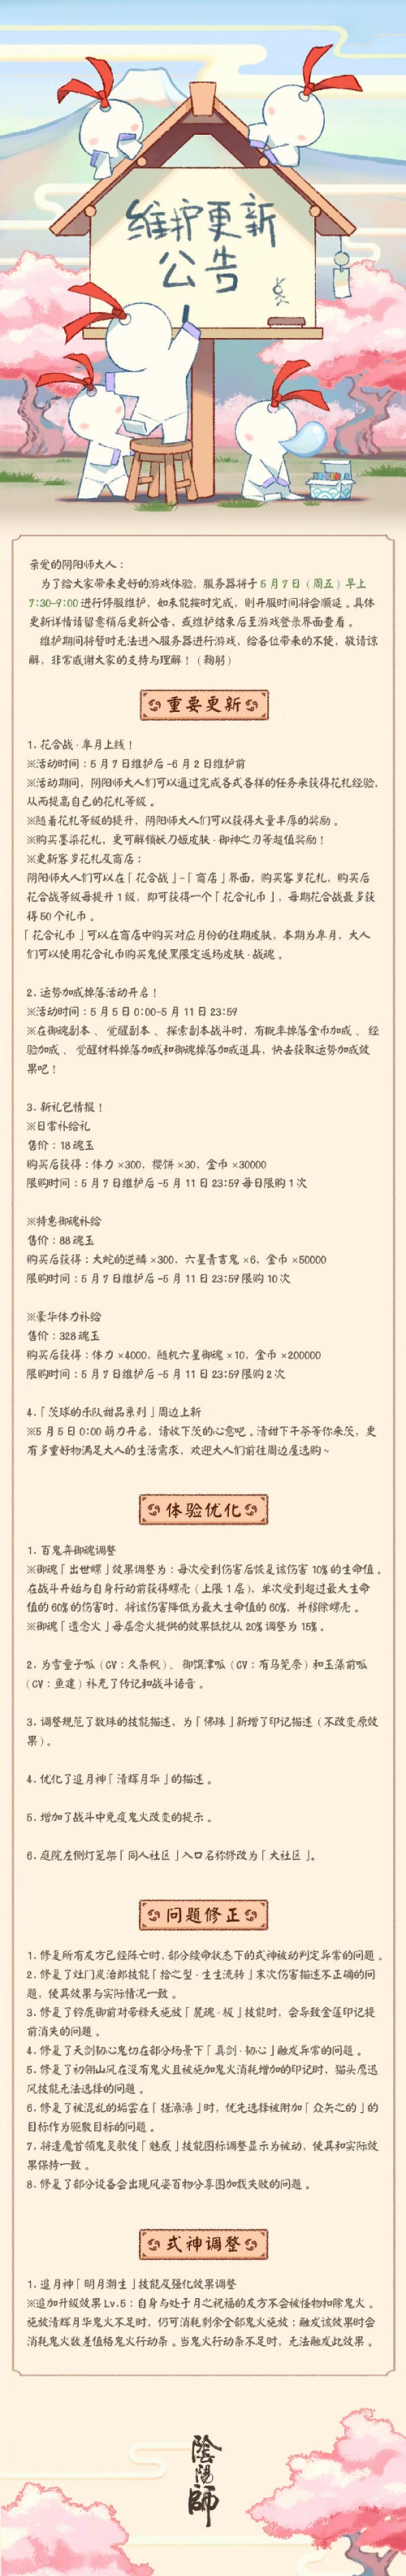 阴阳师5月7日更新公告 花合战臯月活动上线